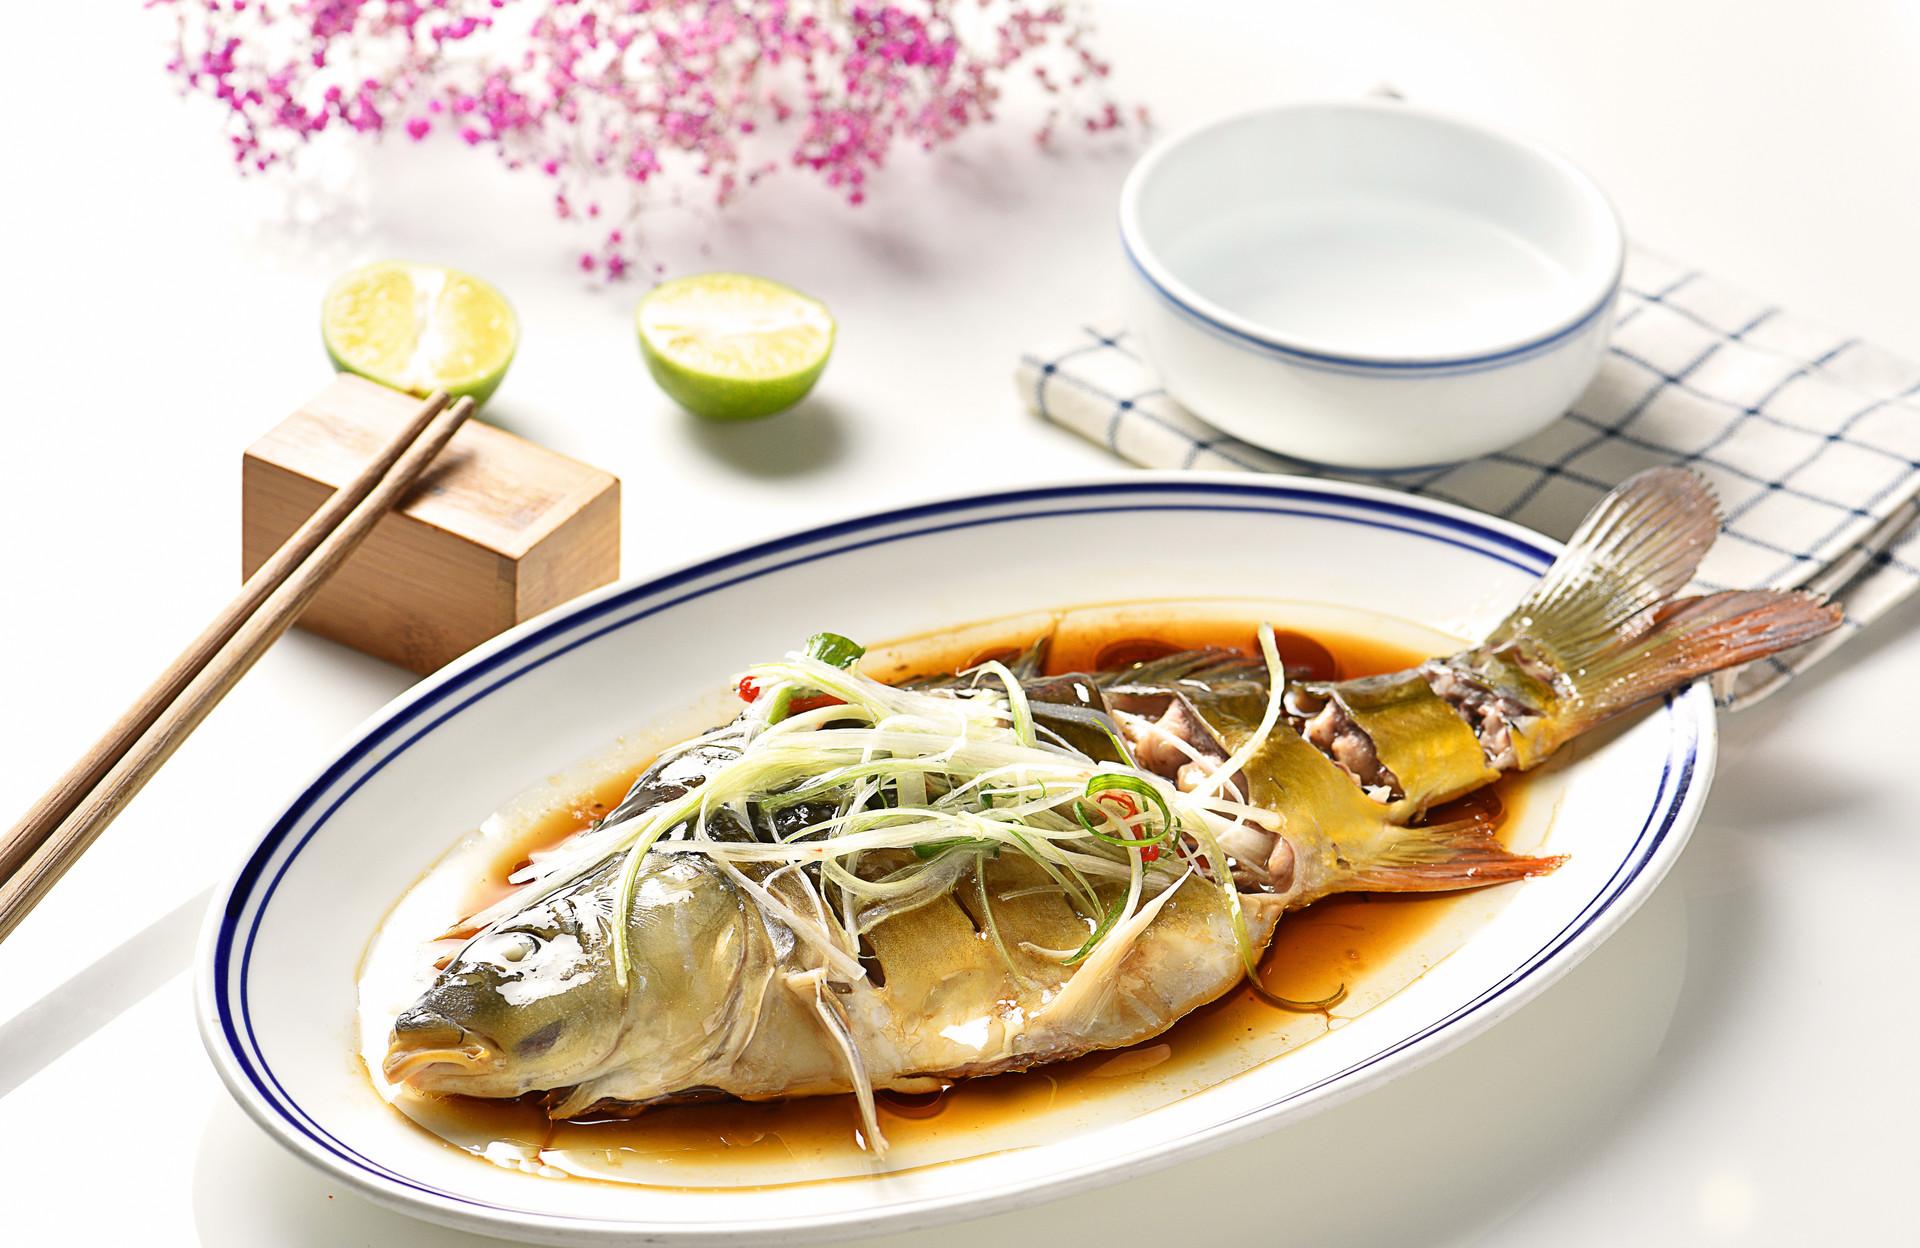 臭桂鱼是哪里的特色菜